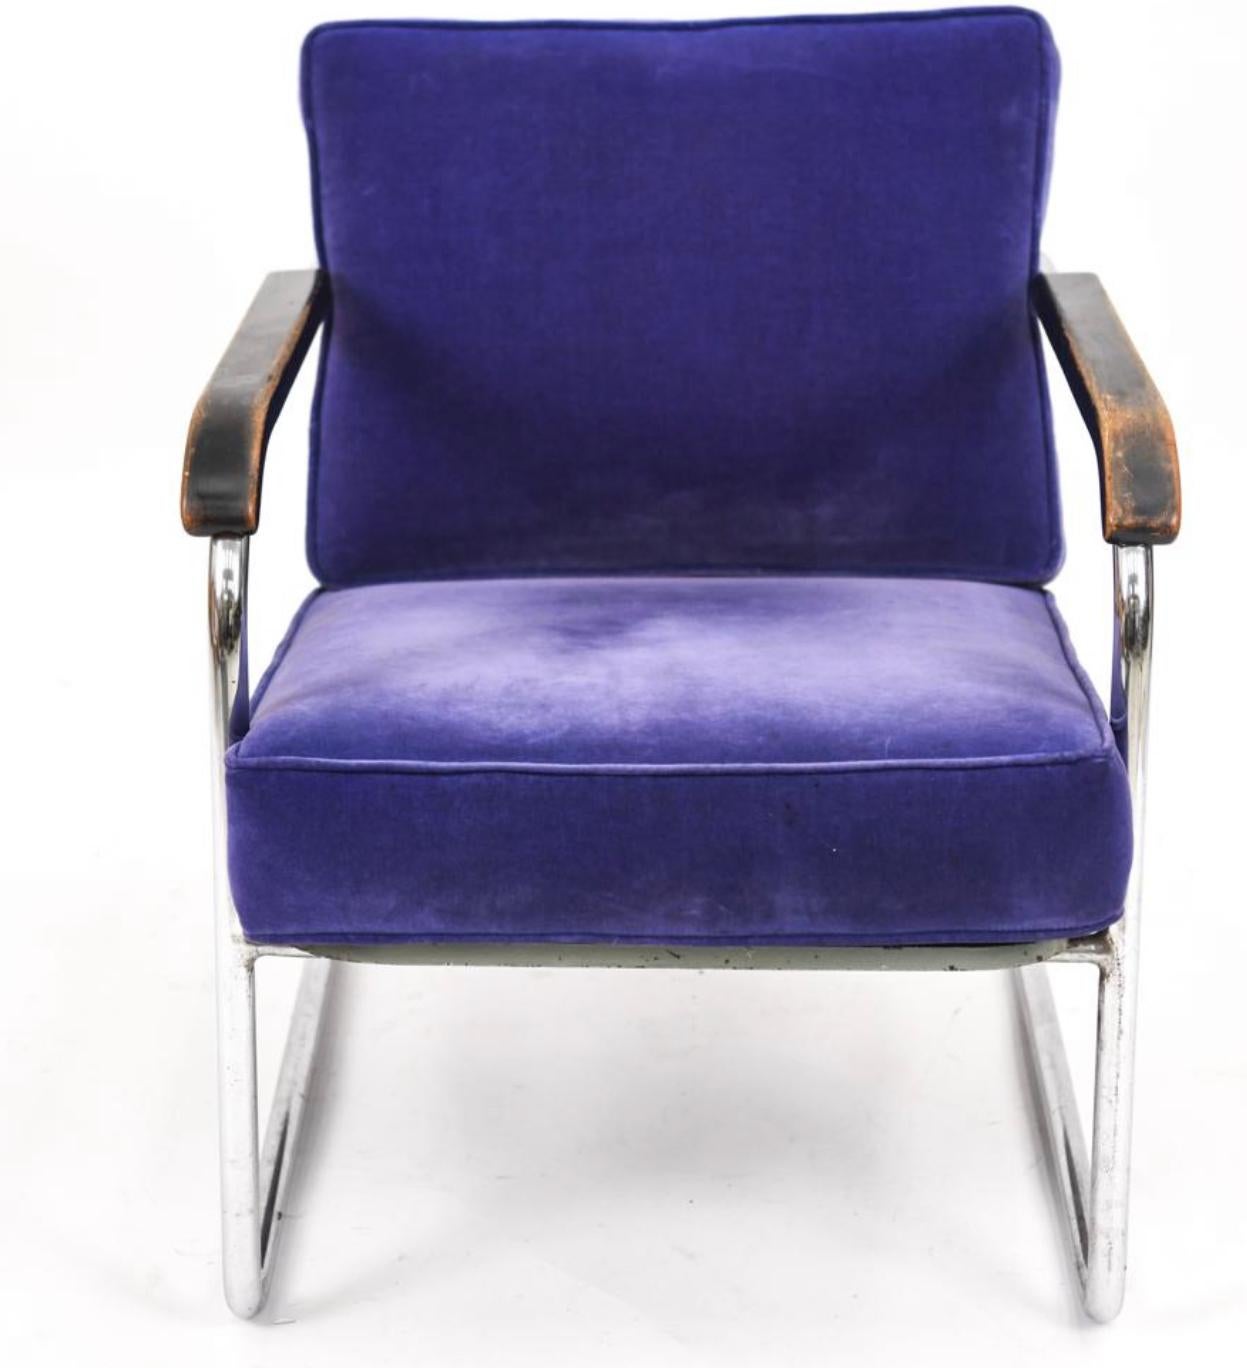 Swiss Werner Max Moser Embru Wohnbedarf WM1 Reclining Lounge Chair Switzerland 1939 For Sale